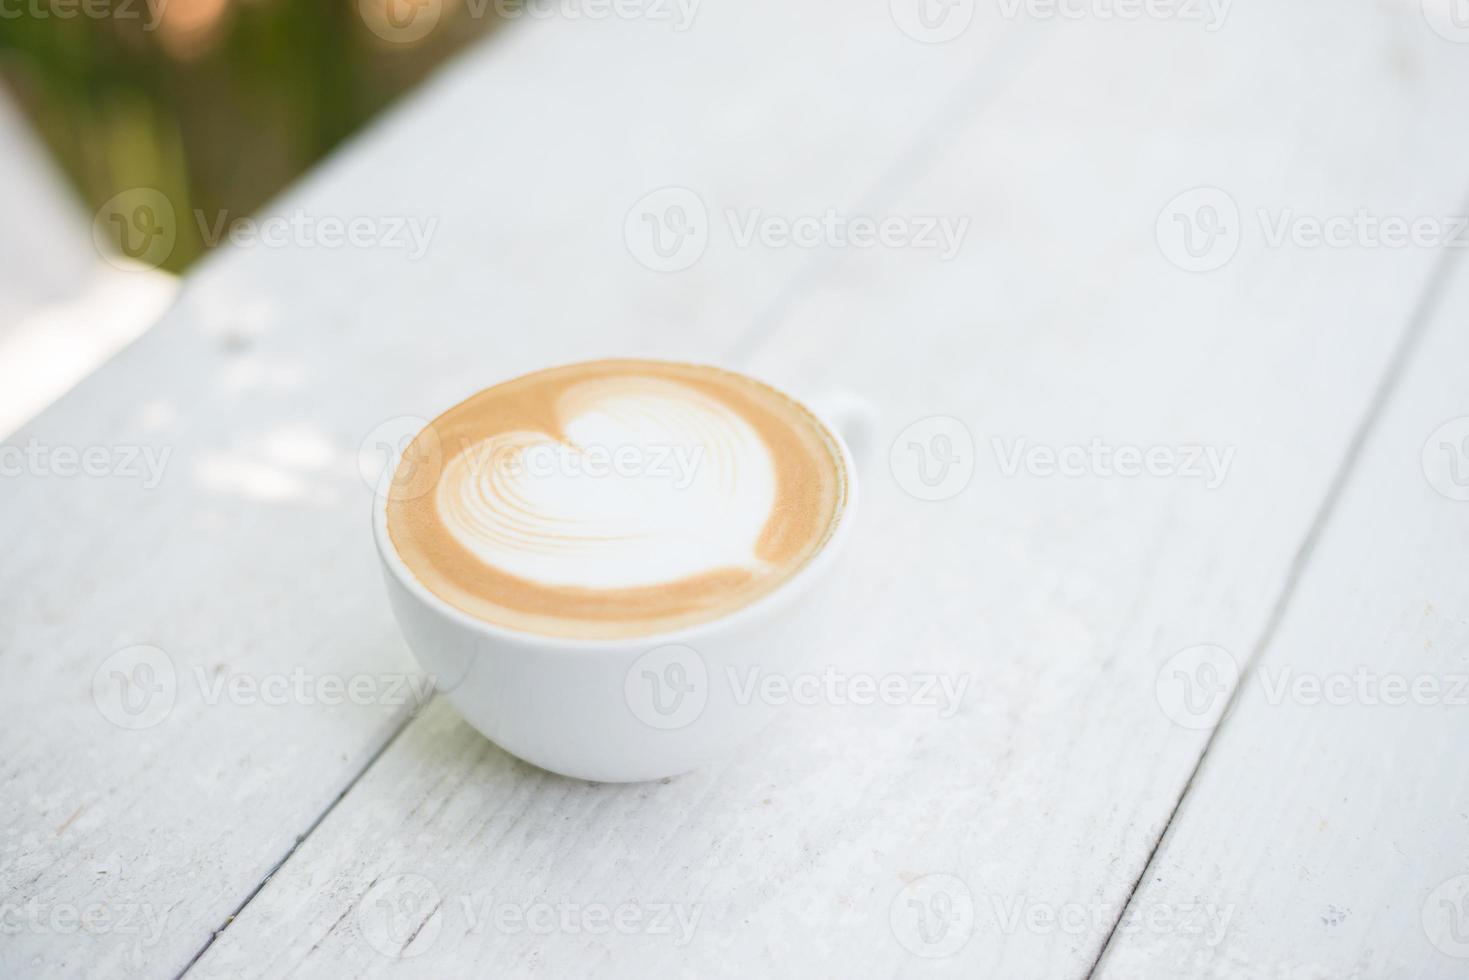 kopp latte art hjärta form kaffe på vitt bord foto